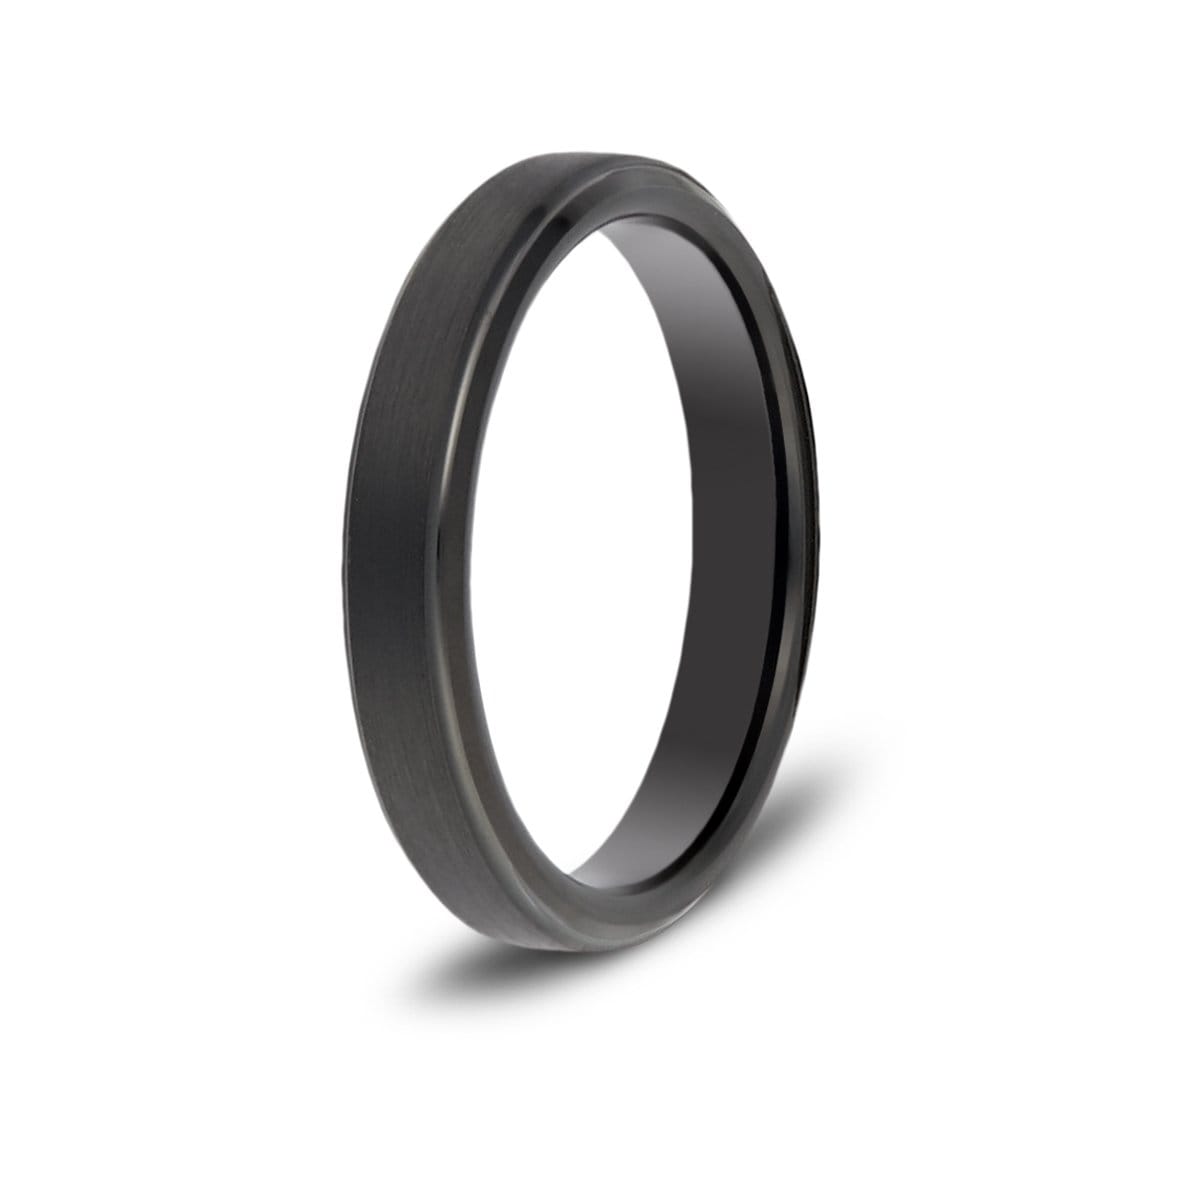 Black Ring PNG Images & PSDs for Download | PixelSquid - S11679664C